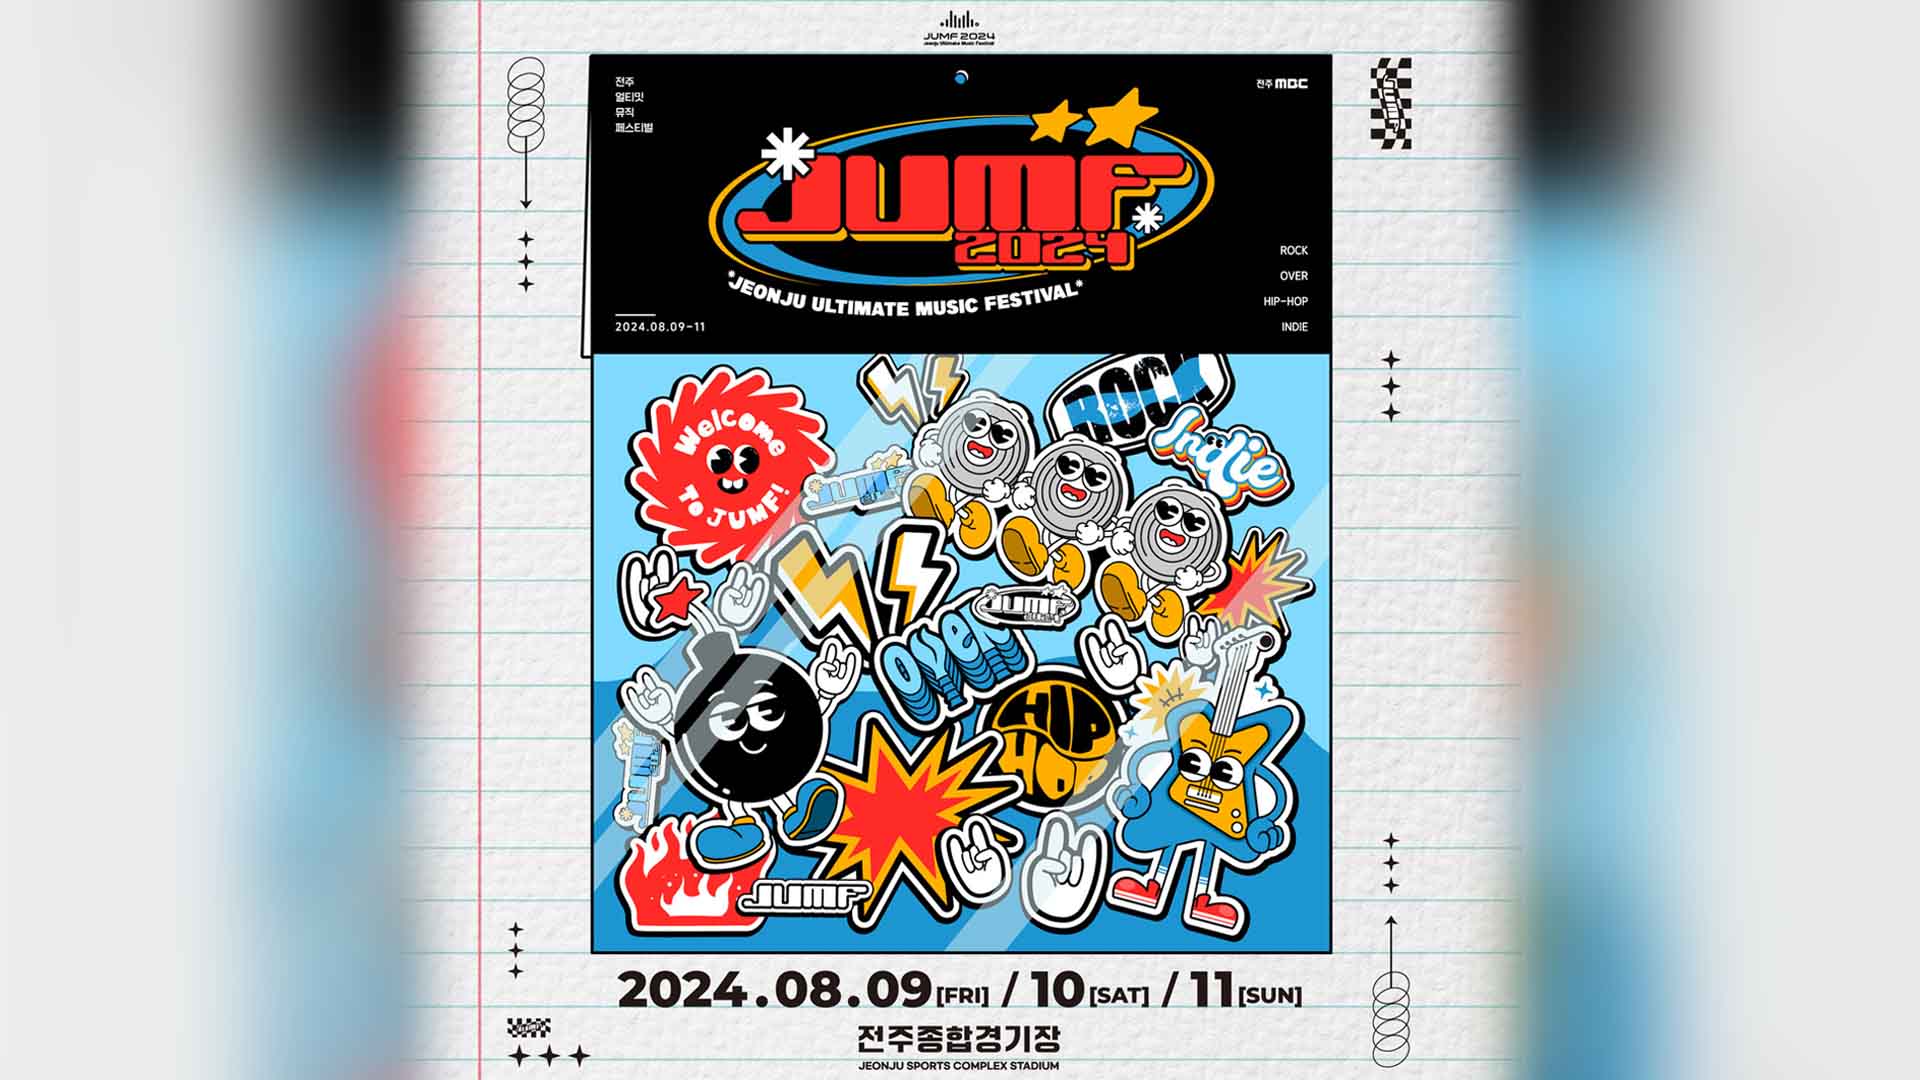 한여름 대표 음악축제 'JUMF', 8월 9~11일 열린다